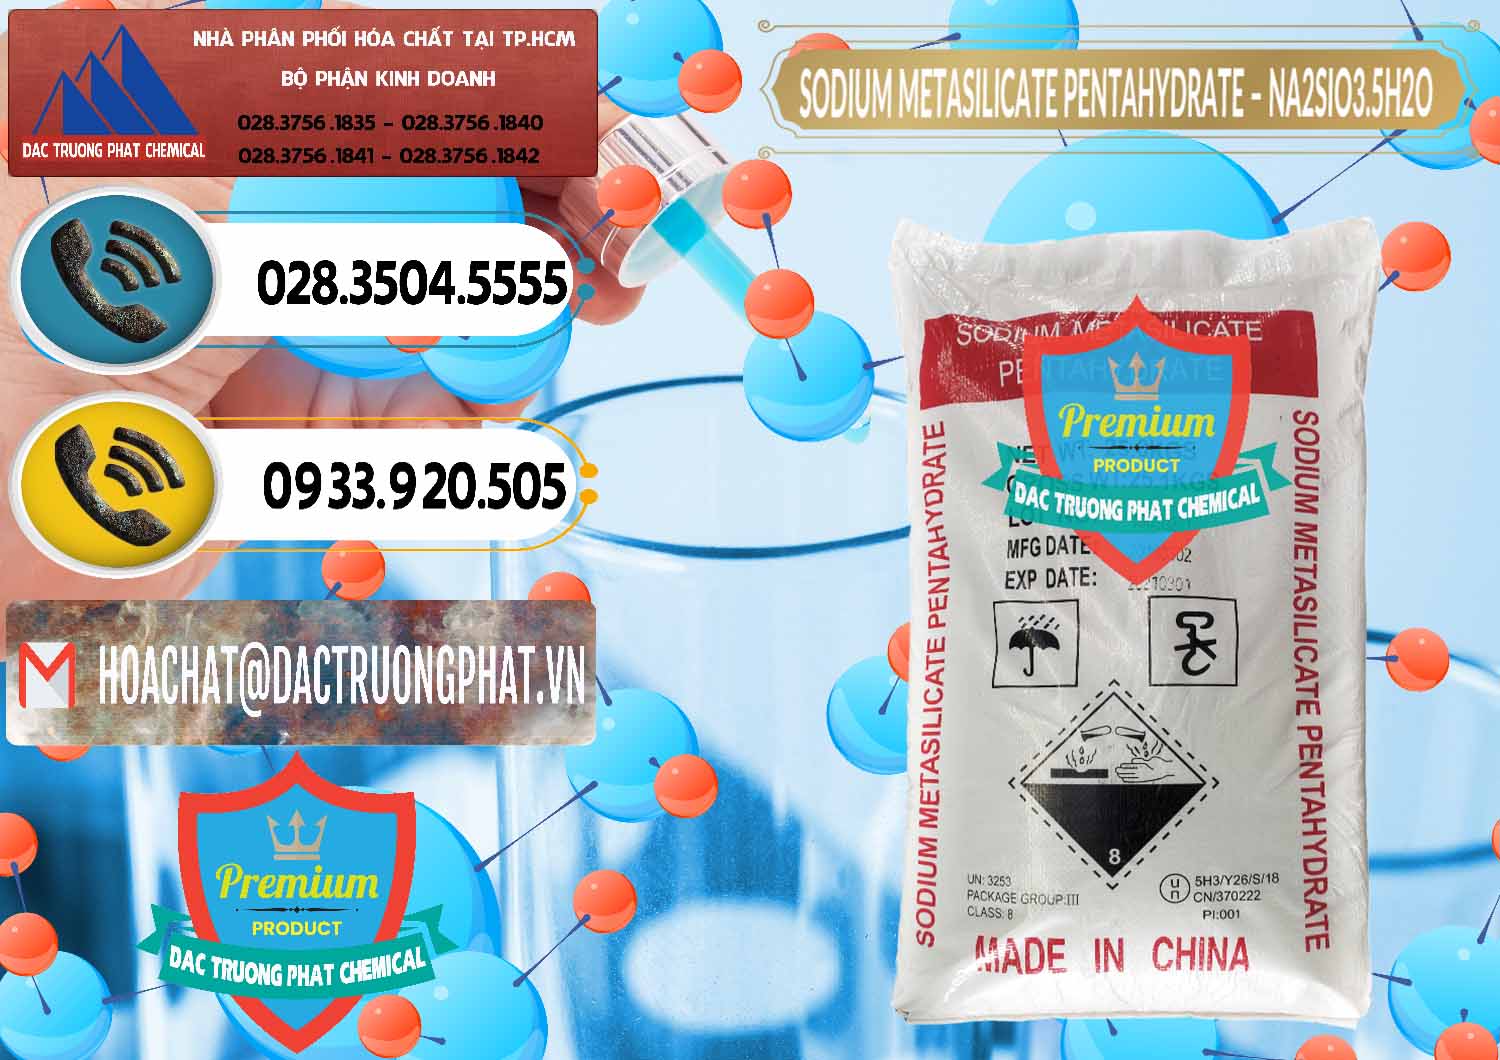 Công ty chuyên kinh doanh và bán Sodium Metasilicate Pentahydrate – Silicate Bột Trung Quốc China - 0147 - Cty chuyên cung cấp ( bán ) hóa chất tại TP.HCM - hoachatdetnhuom.vn